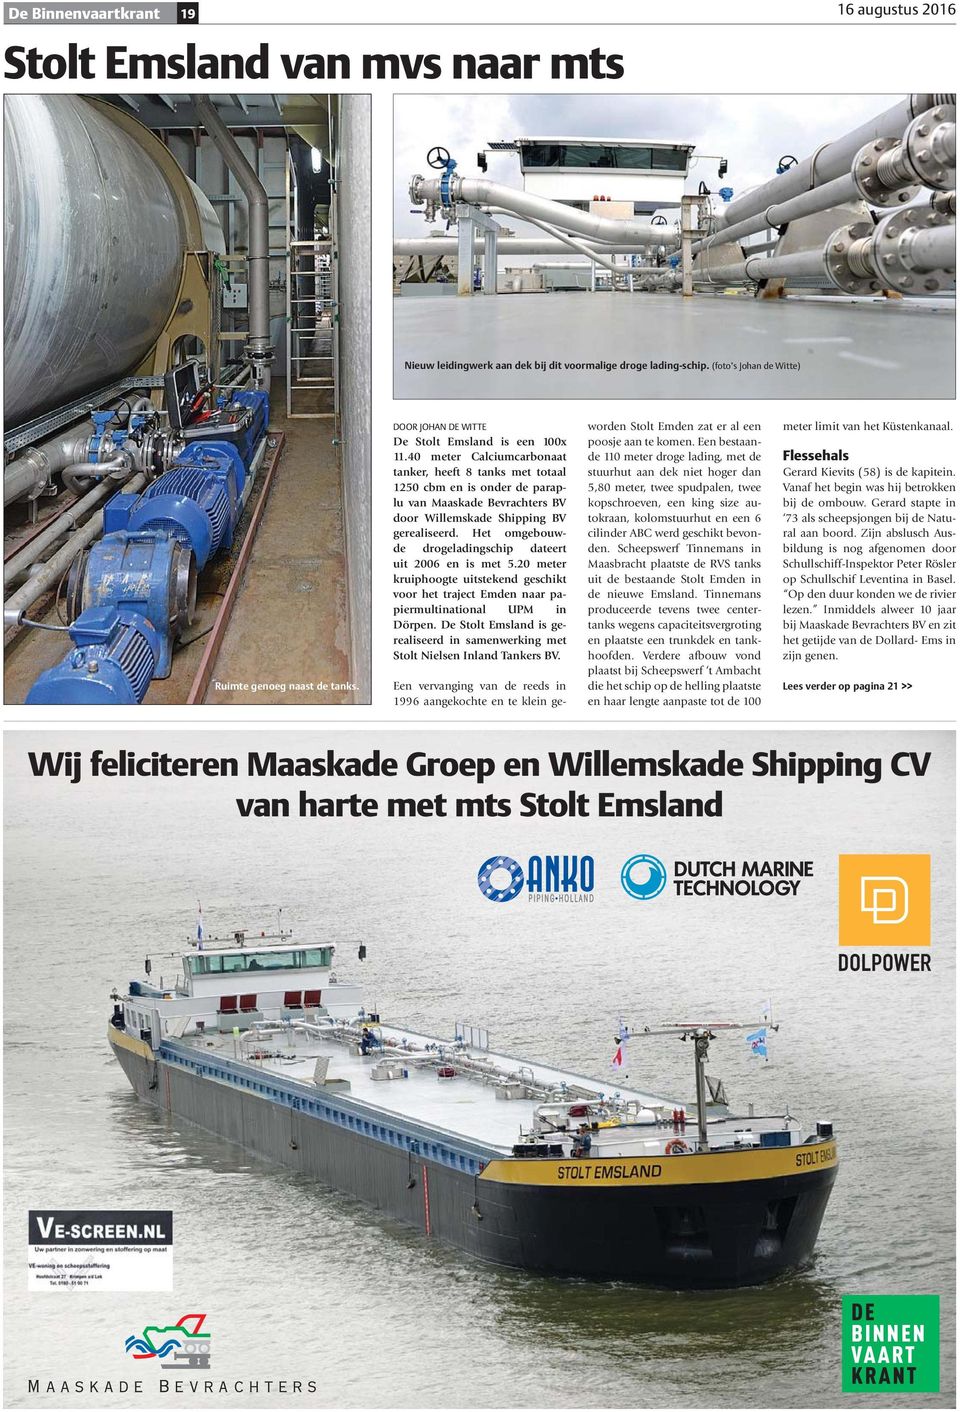 40 meter Calciumcarbonaat tanker, heeft 8 tanks met totaal 1250 cbm en is onder de paraplu van Maaskade Bevrachters BV door Willemskade Shipping BV gerealiseerd.